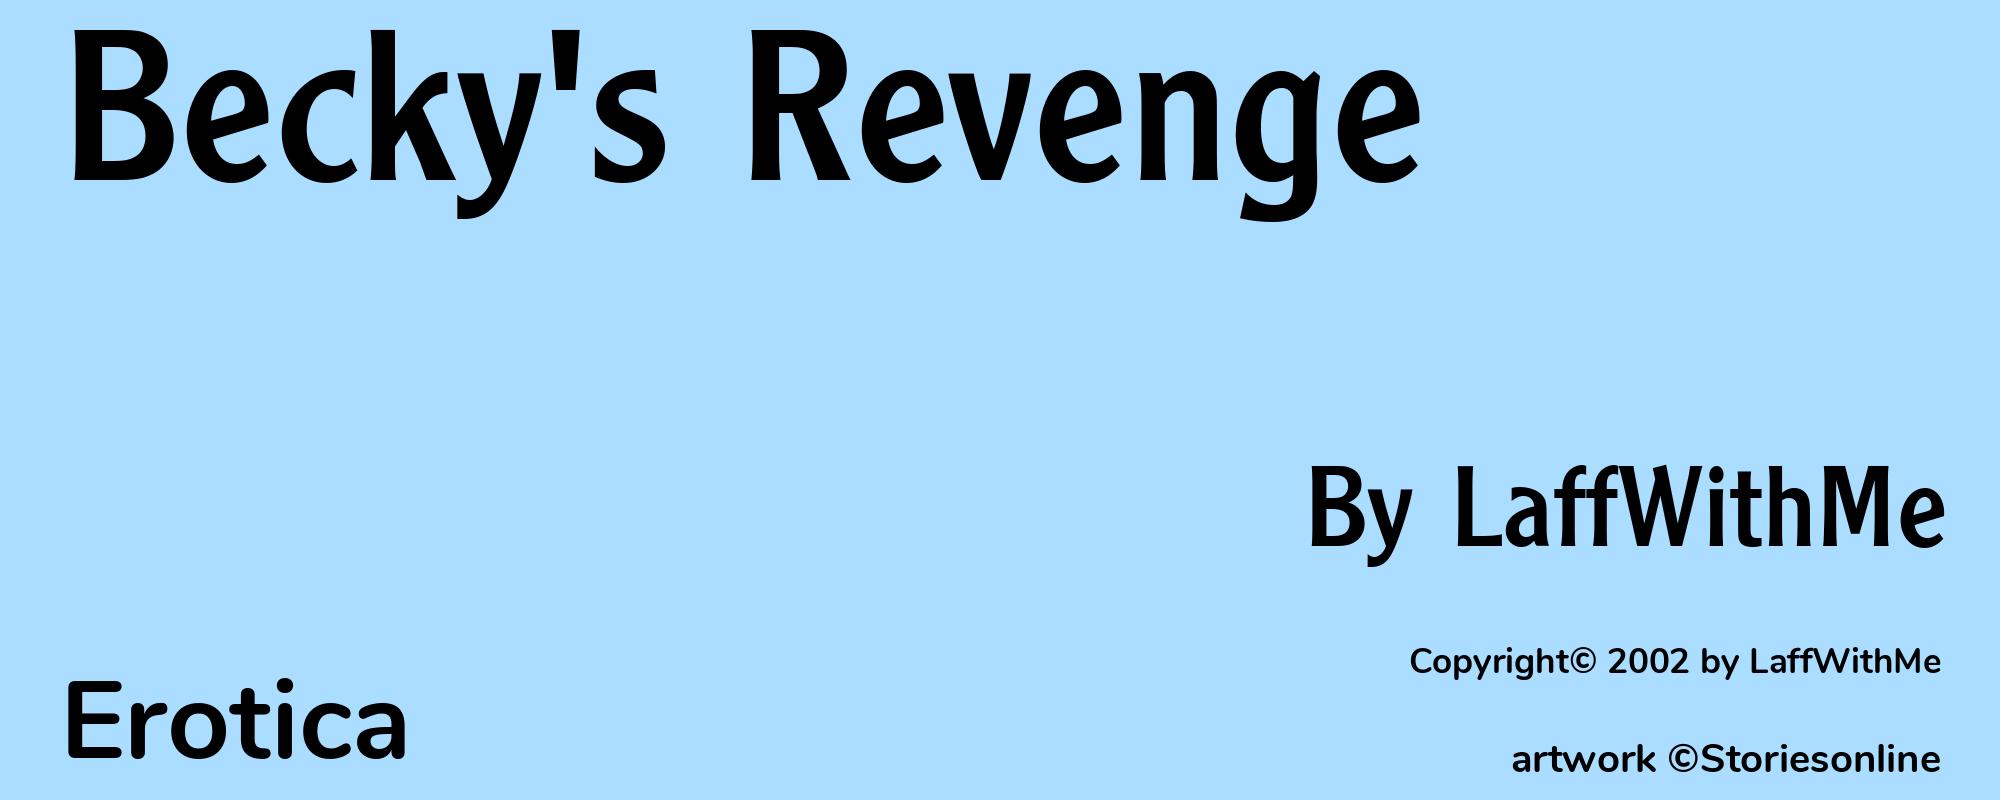 Becky's Revenge - Cover